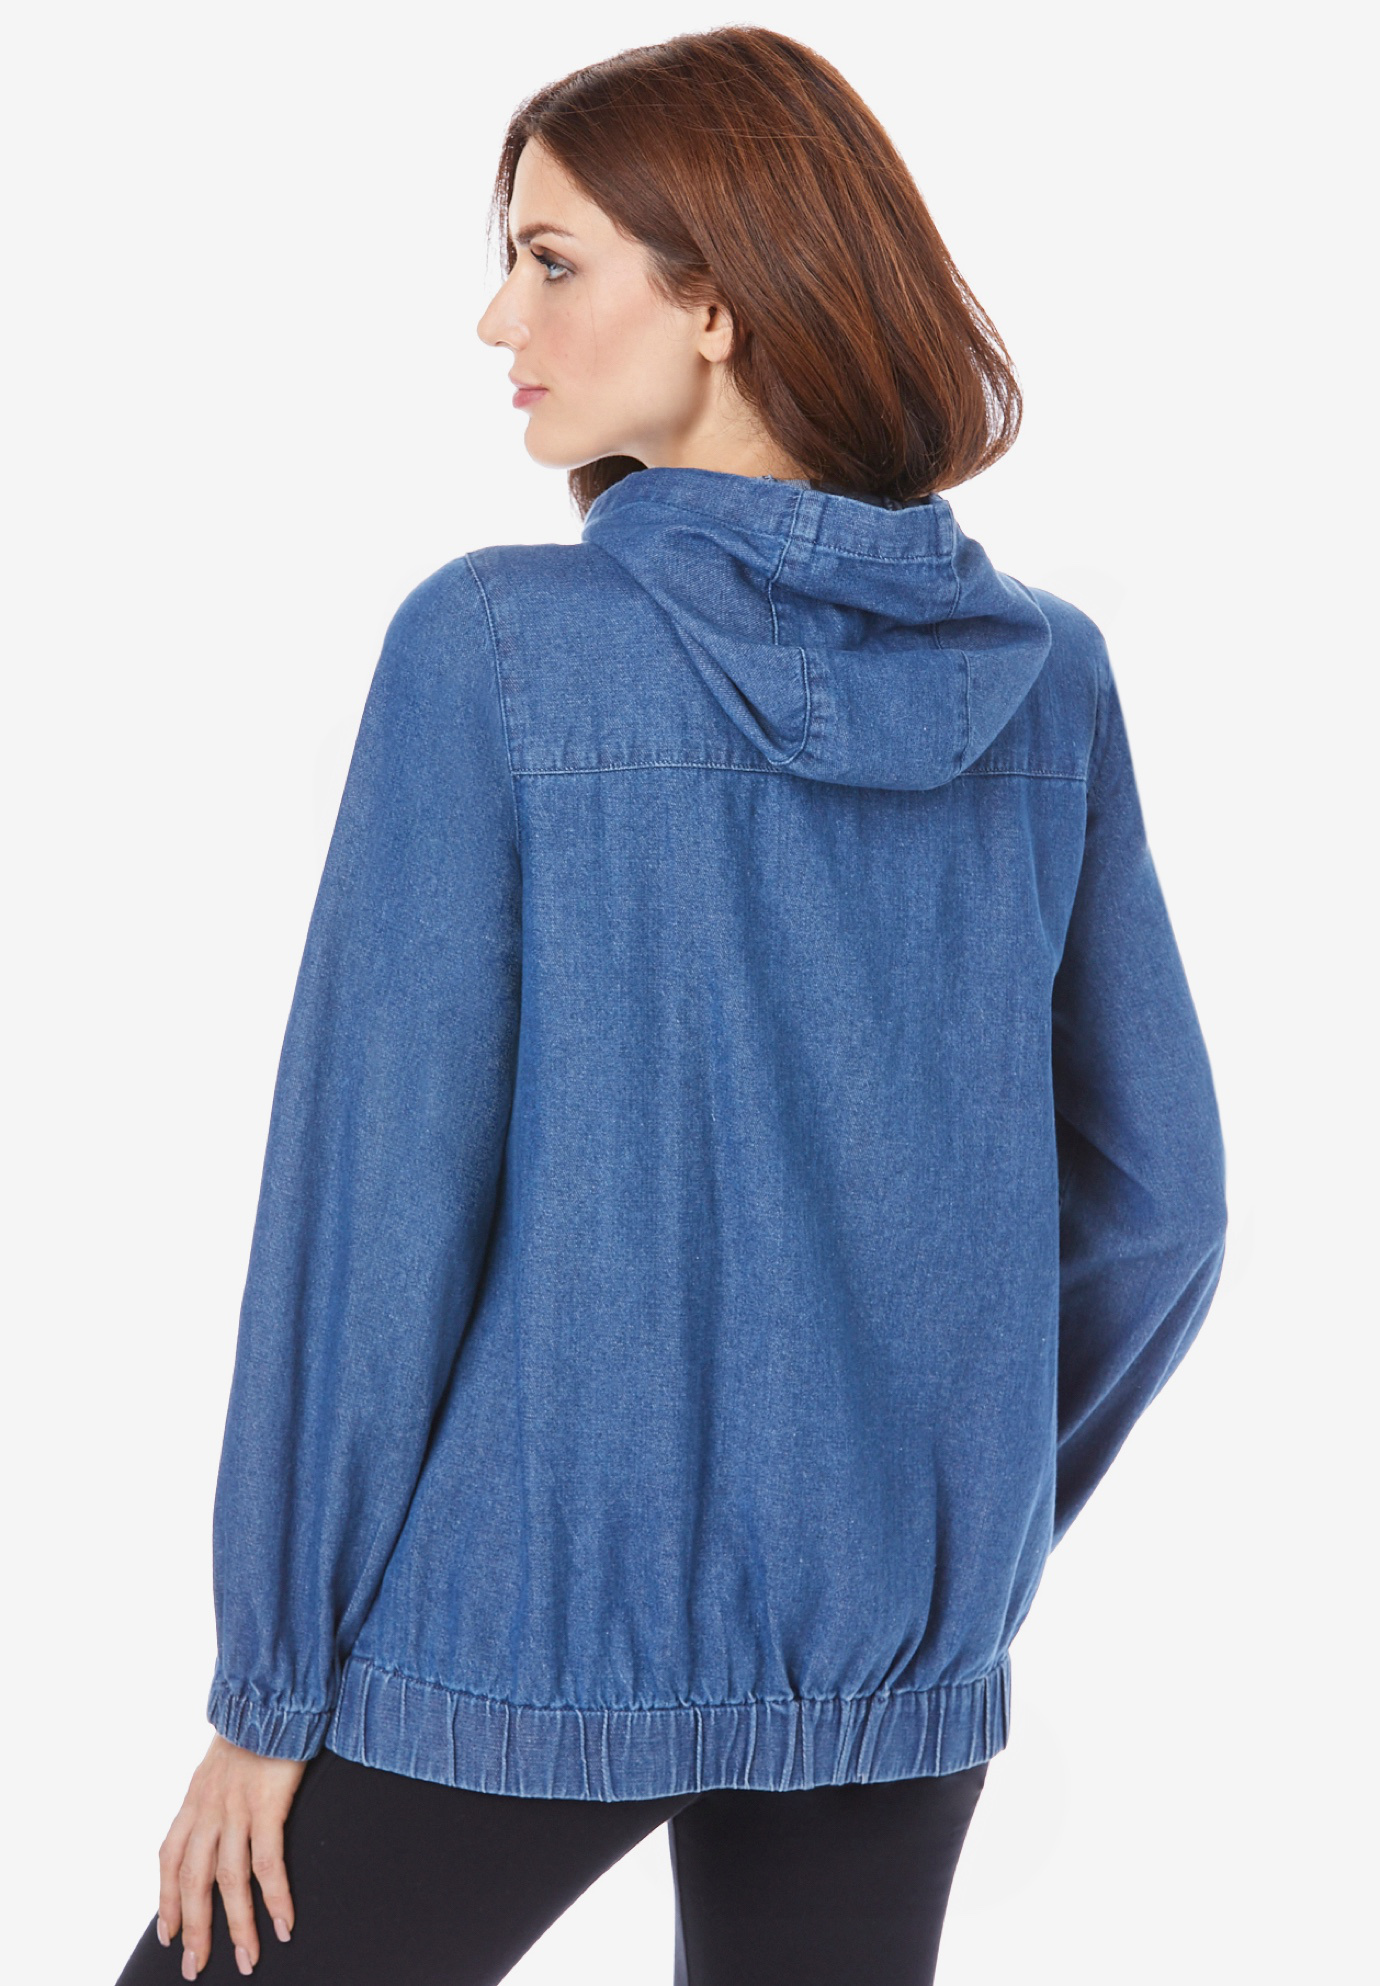 Roaman's Women's Plus Size Cotton Complete Zip-Up Hoodie Denim Jacket - image 3 of 5